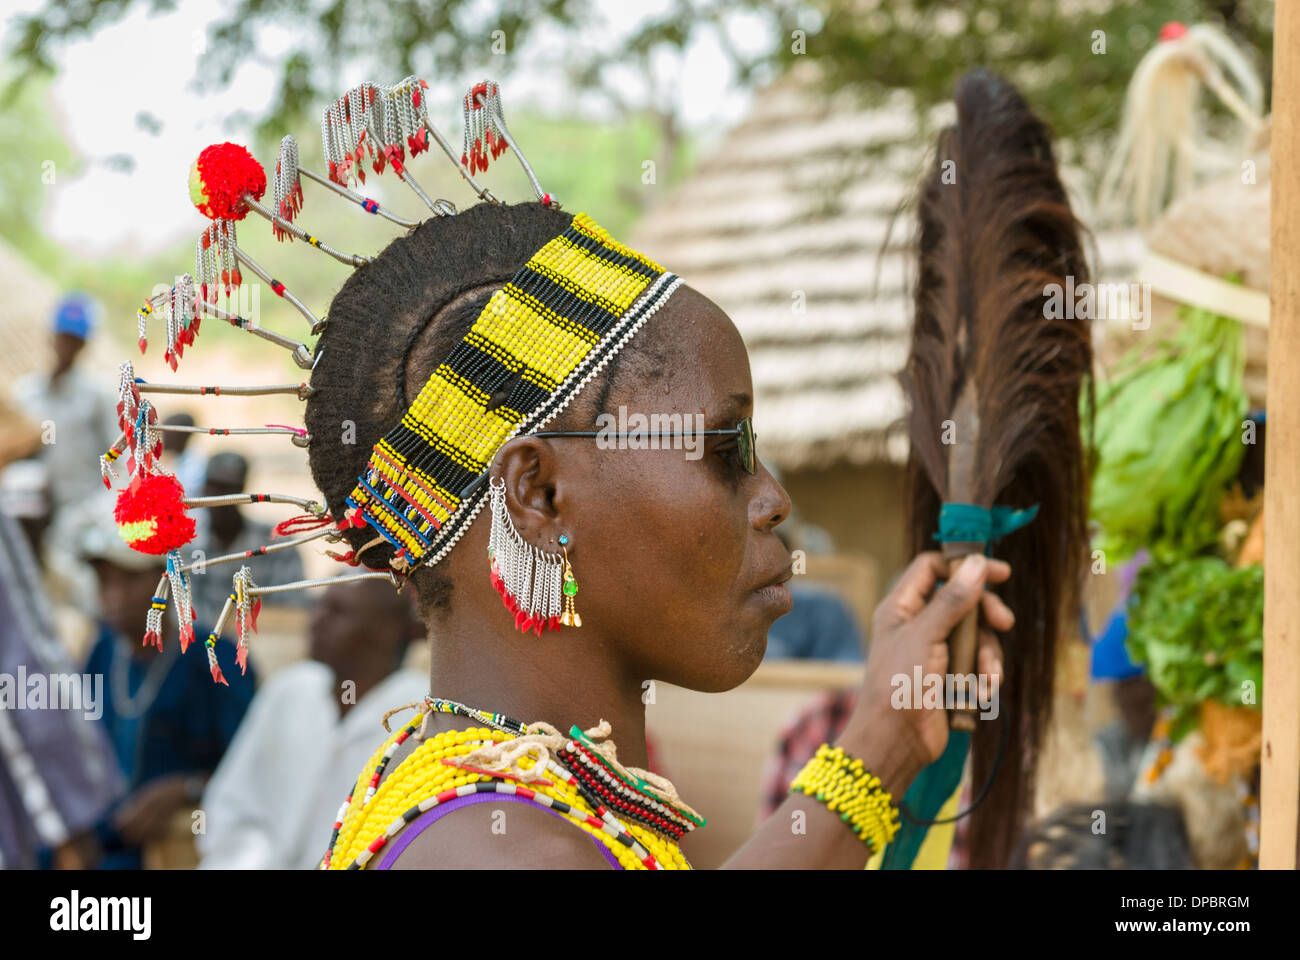 Bassari Feier mit Tänzern auf traditionelle Kleidung, Ethiolo Dorf,  Bassari-Land, Senegal, Afrika Stockfotografie - Alamy